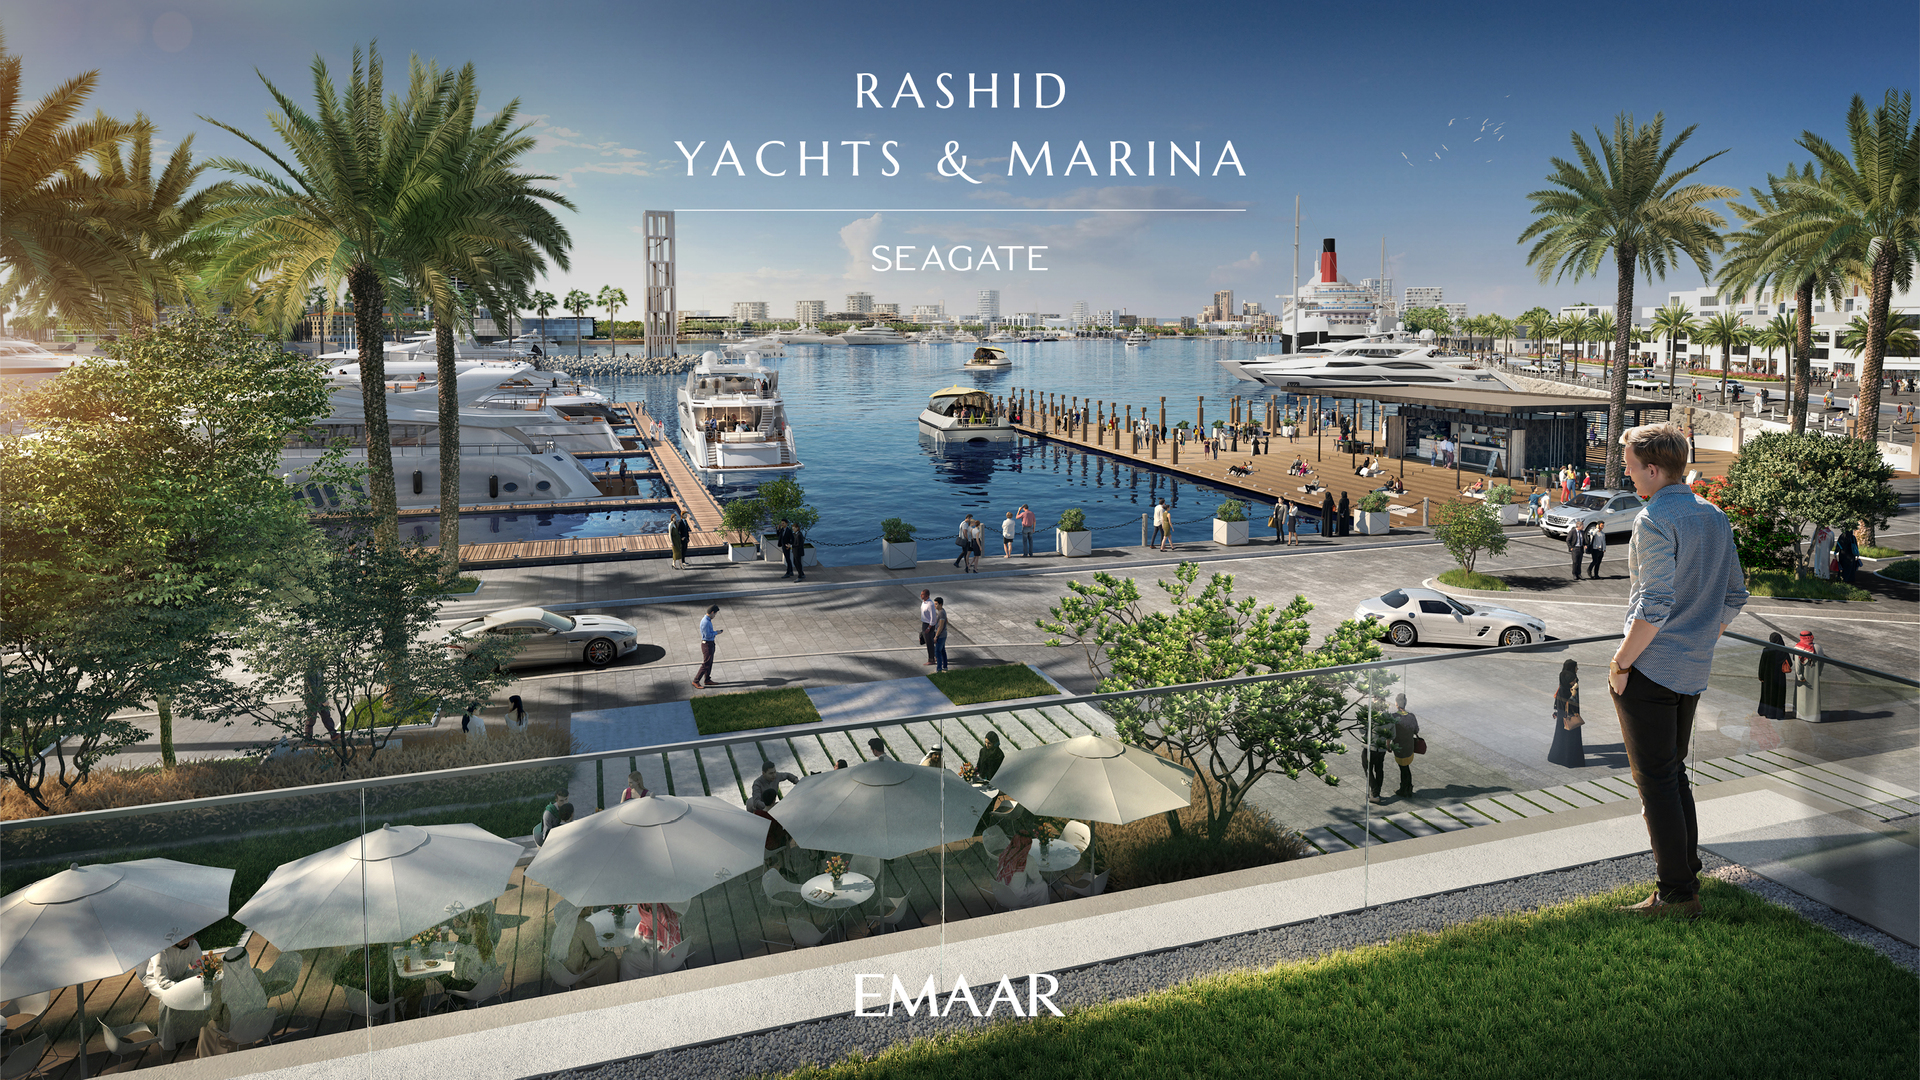 Seagate Rashid Yachts & Marina in Mina Rashid by Emaar